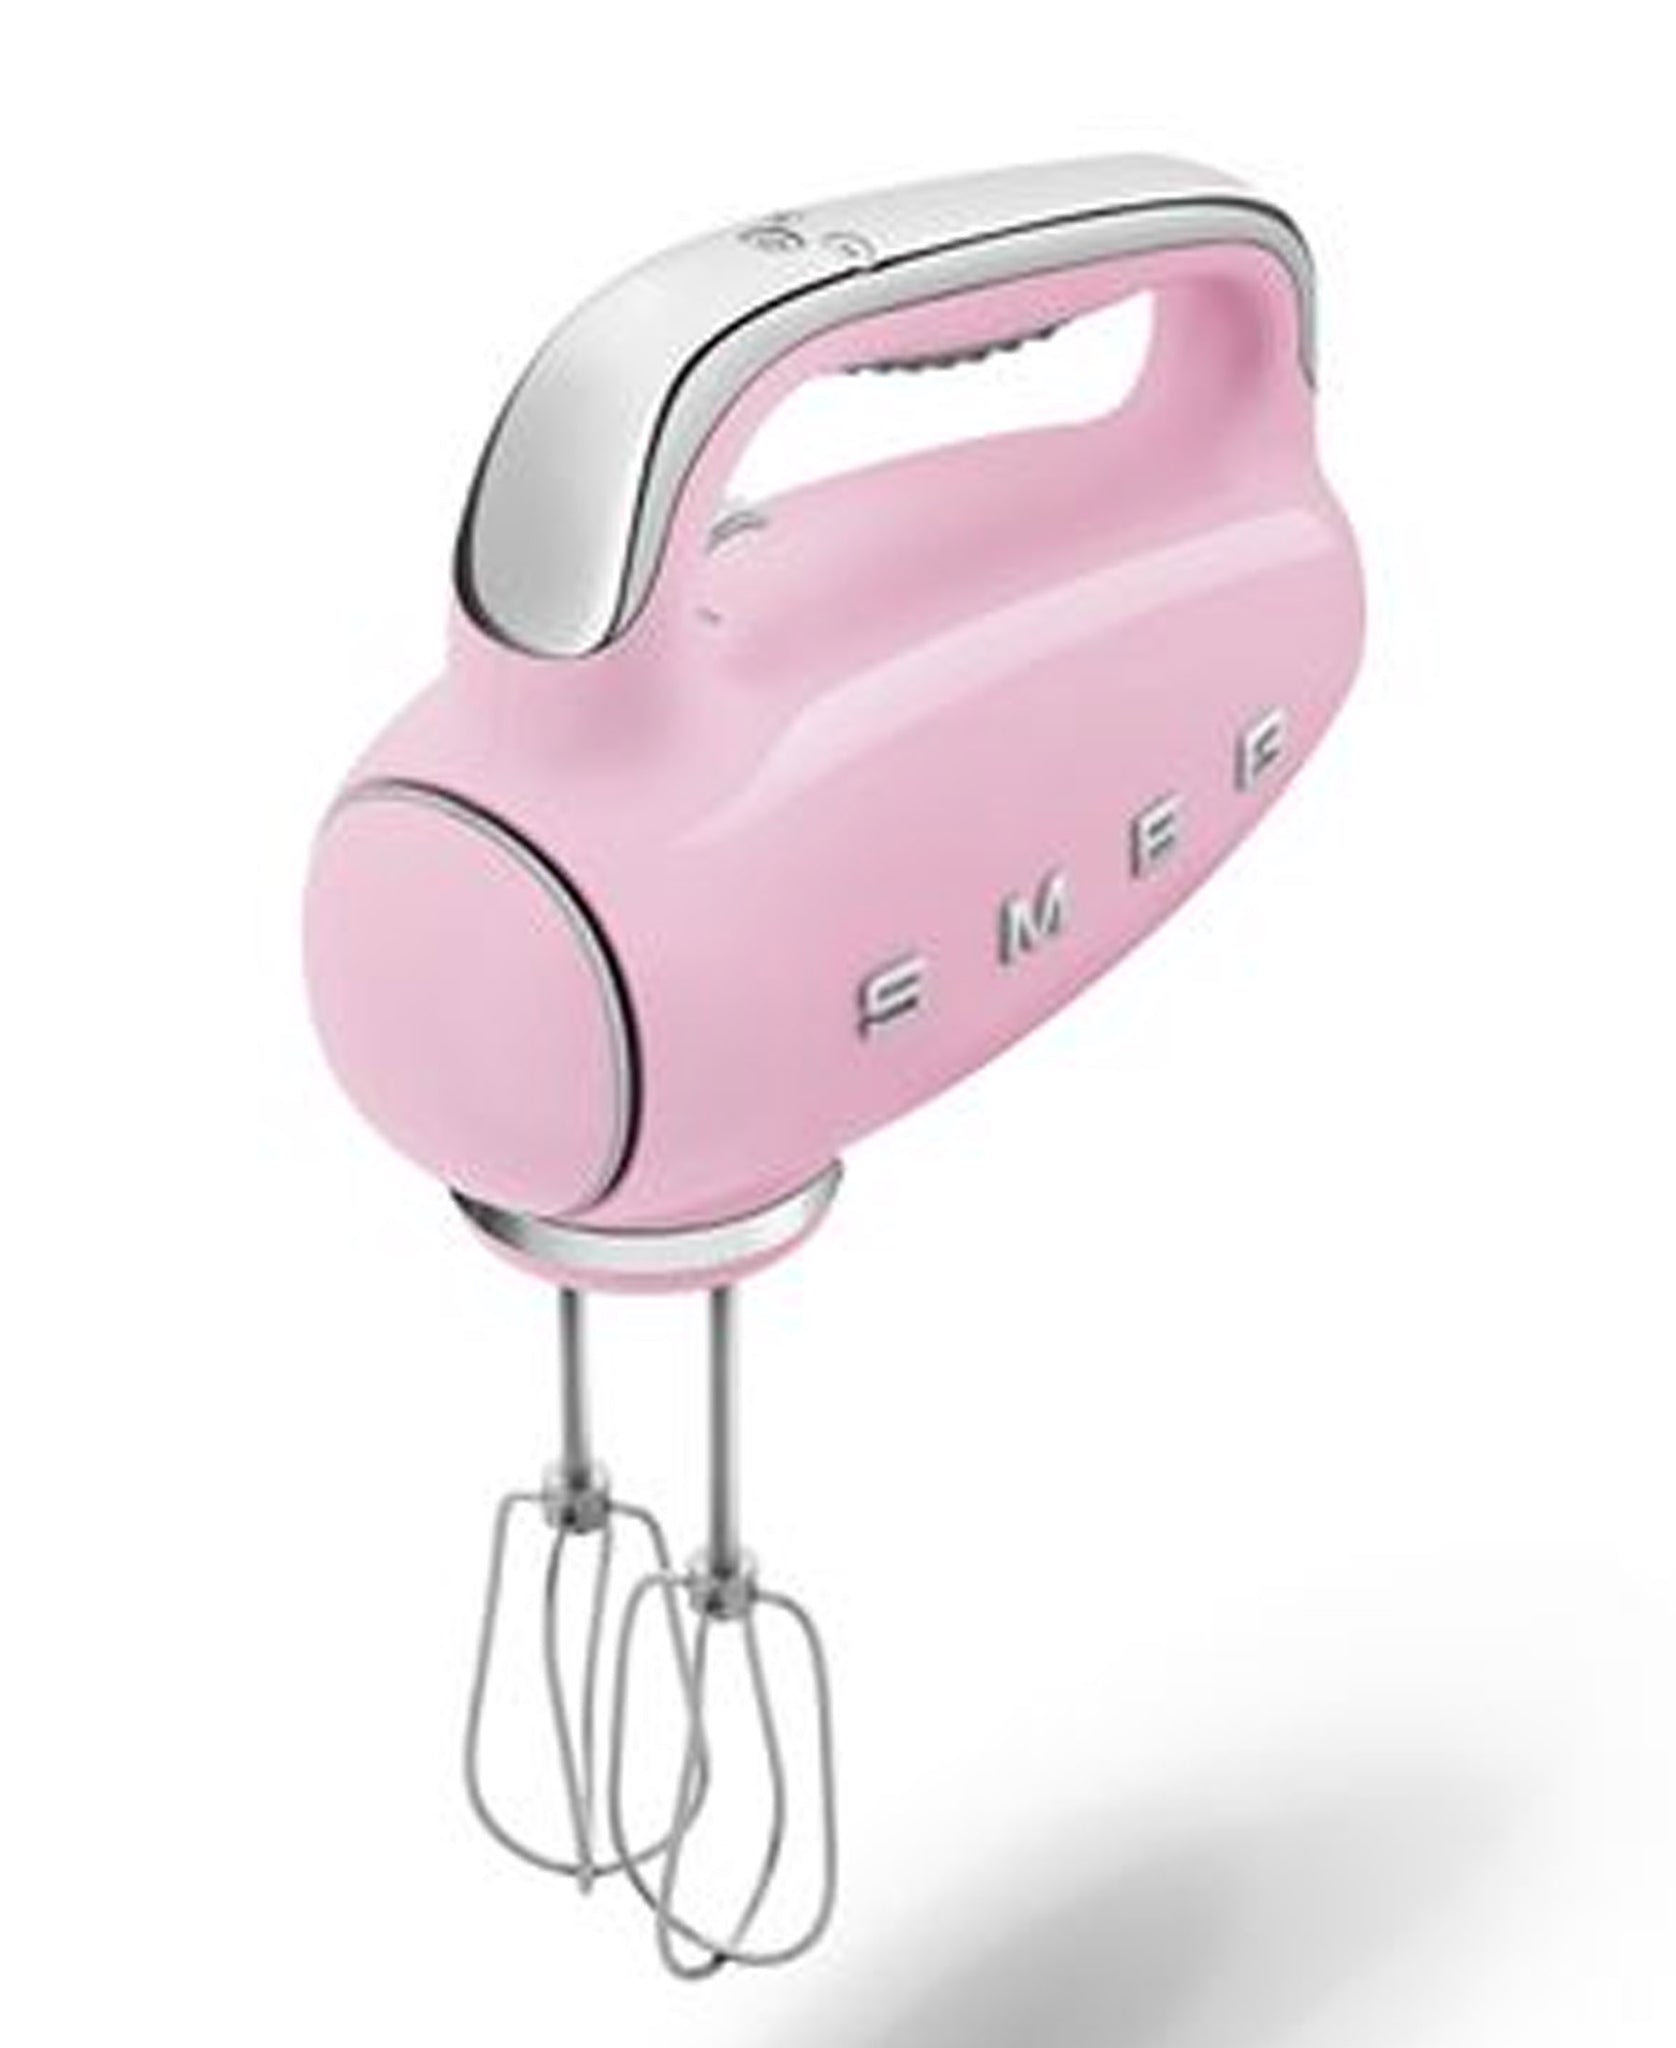 Smeg Retro 50's Style Hand Mixer 250W - Pink